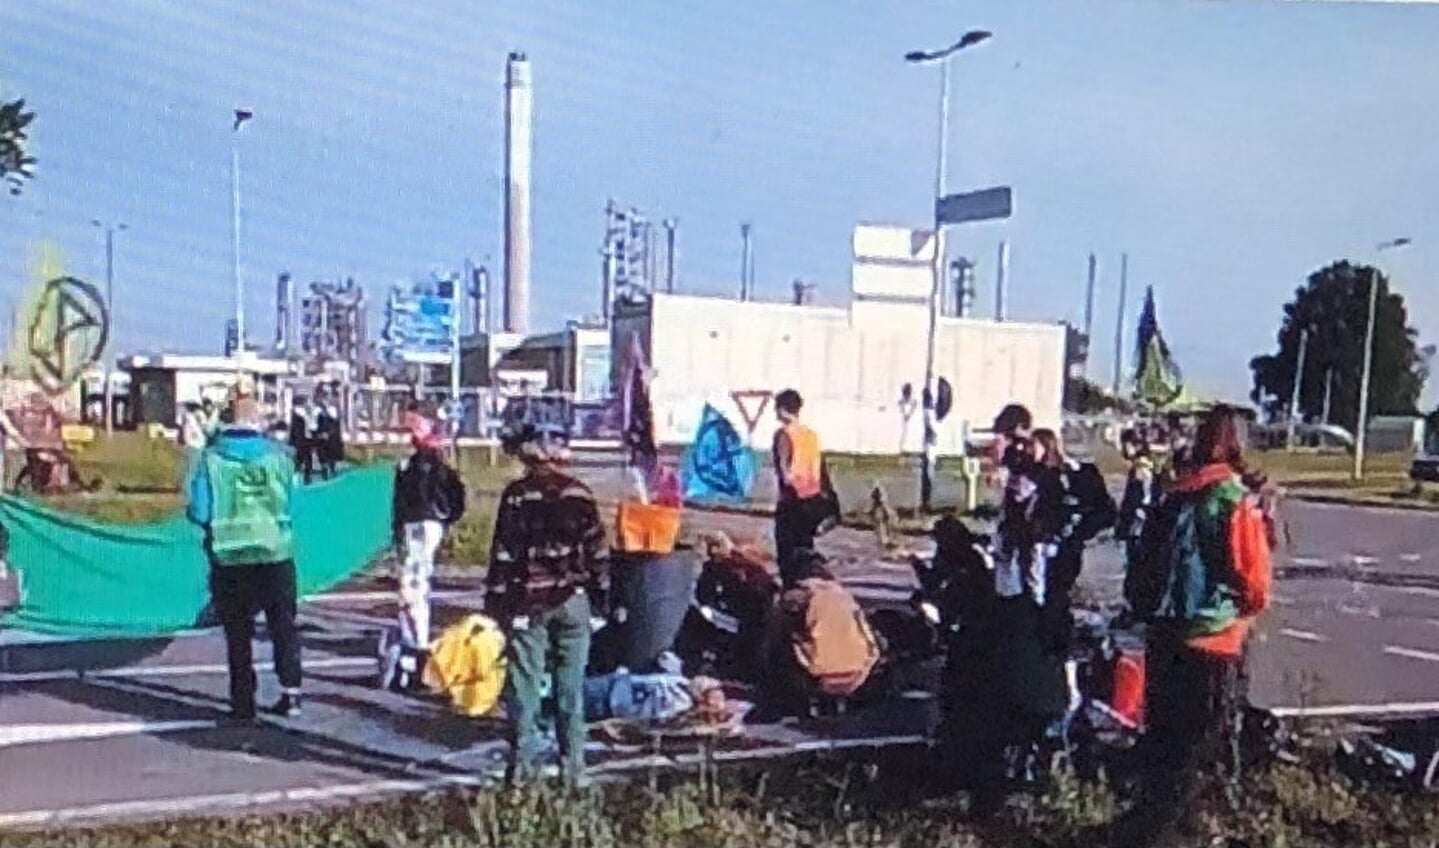 Leden van Extinction Rebellion blokkeerden sinds vanochtend vroeg de toegangswegen tot BP Raffinaderij Rotterdam op de D’Arcyweg 76 in Europoort. Foto: Facebook Extinction Rebellion